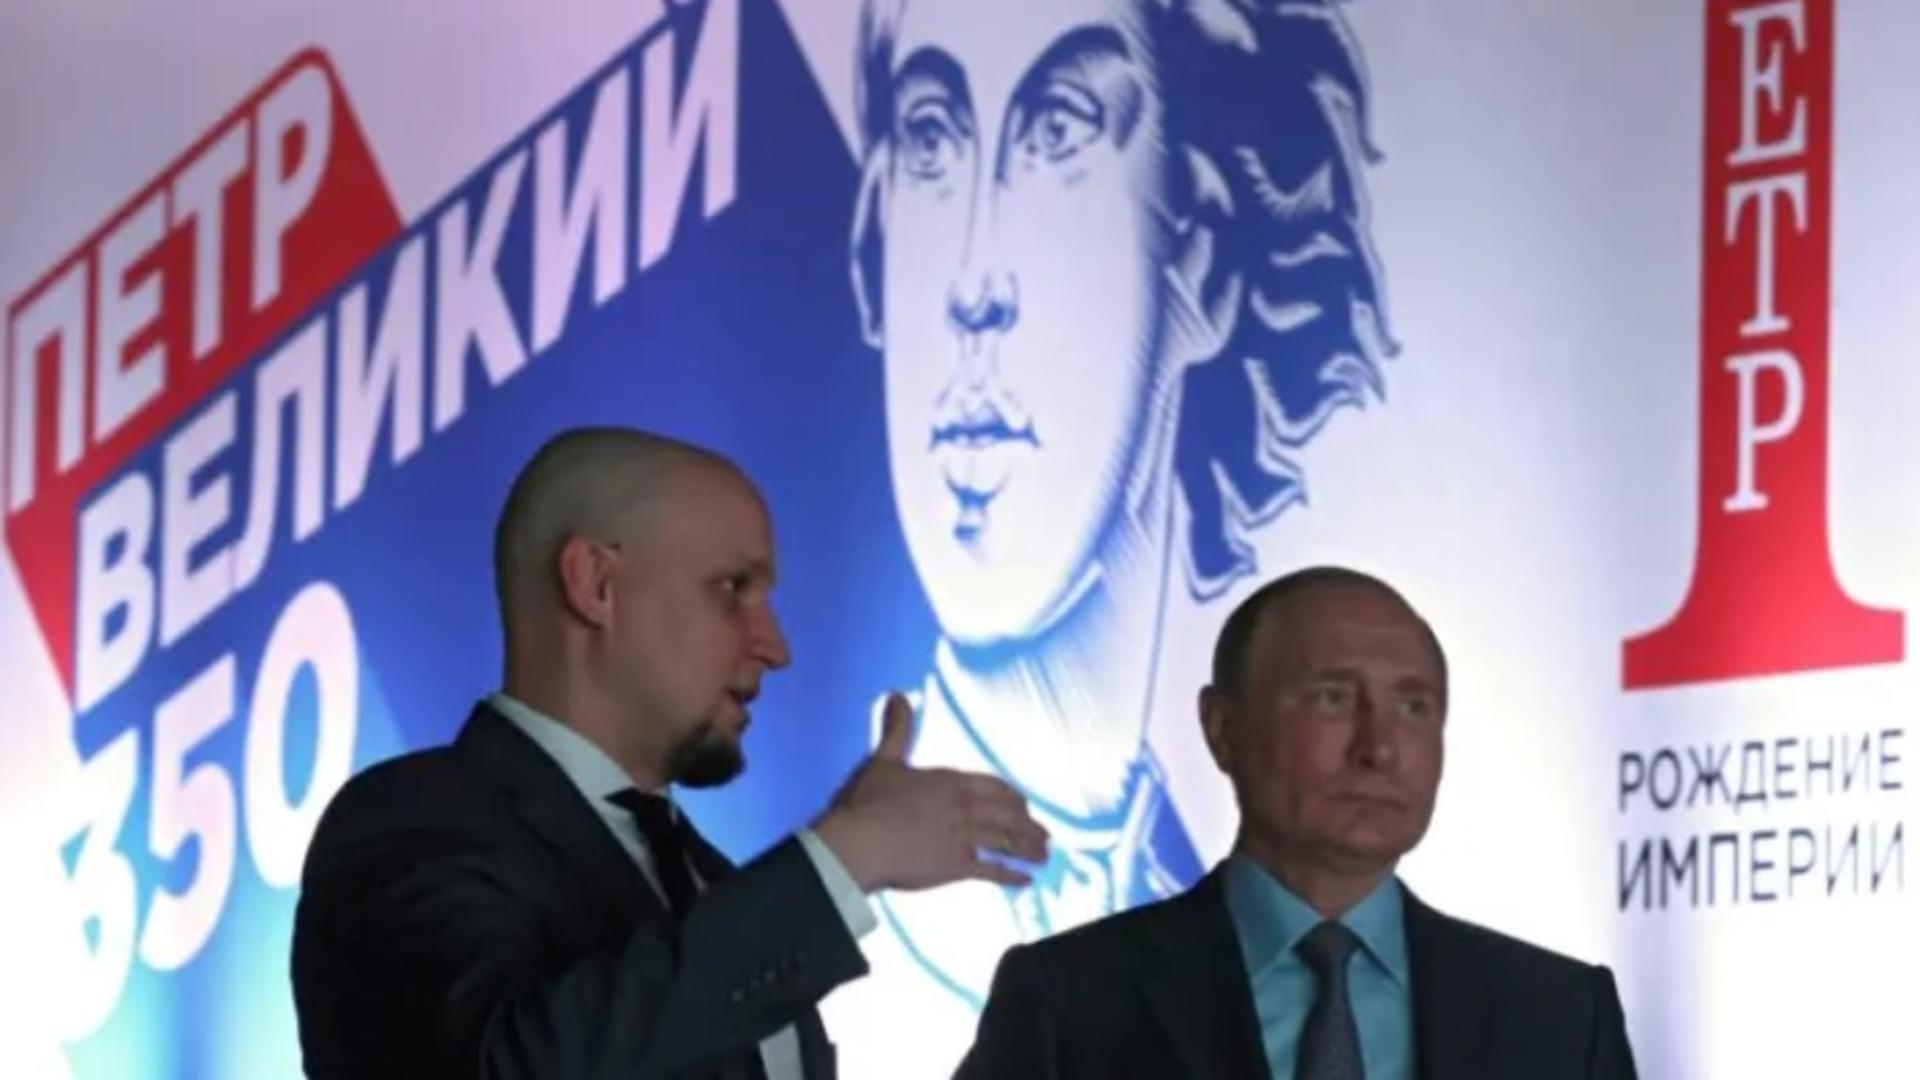 Putin la un eveniment dedicat lui Petru cel Mare